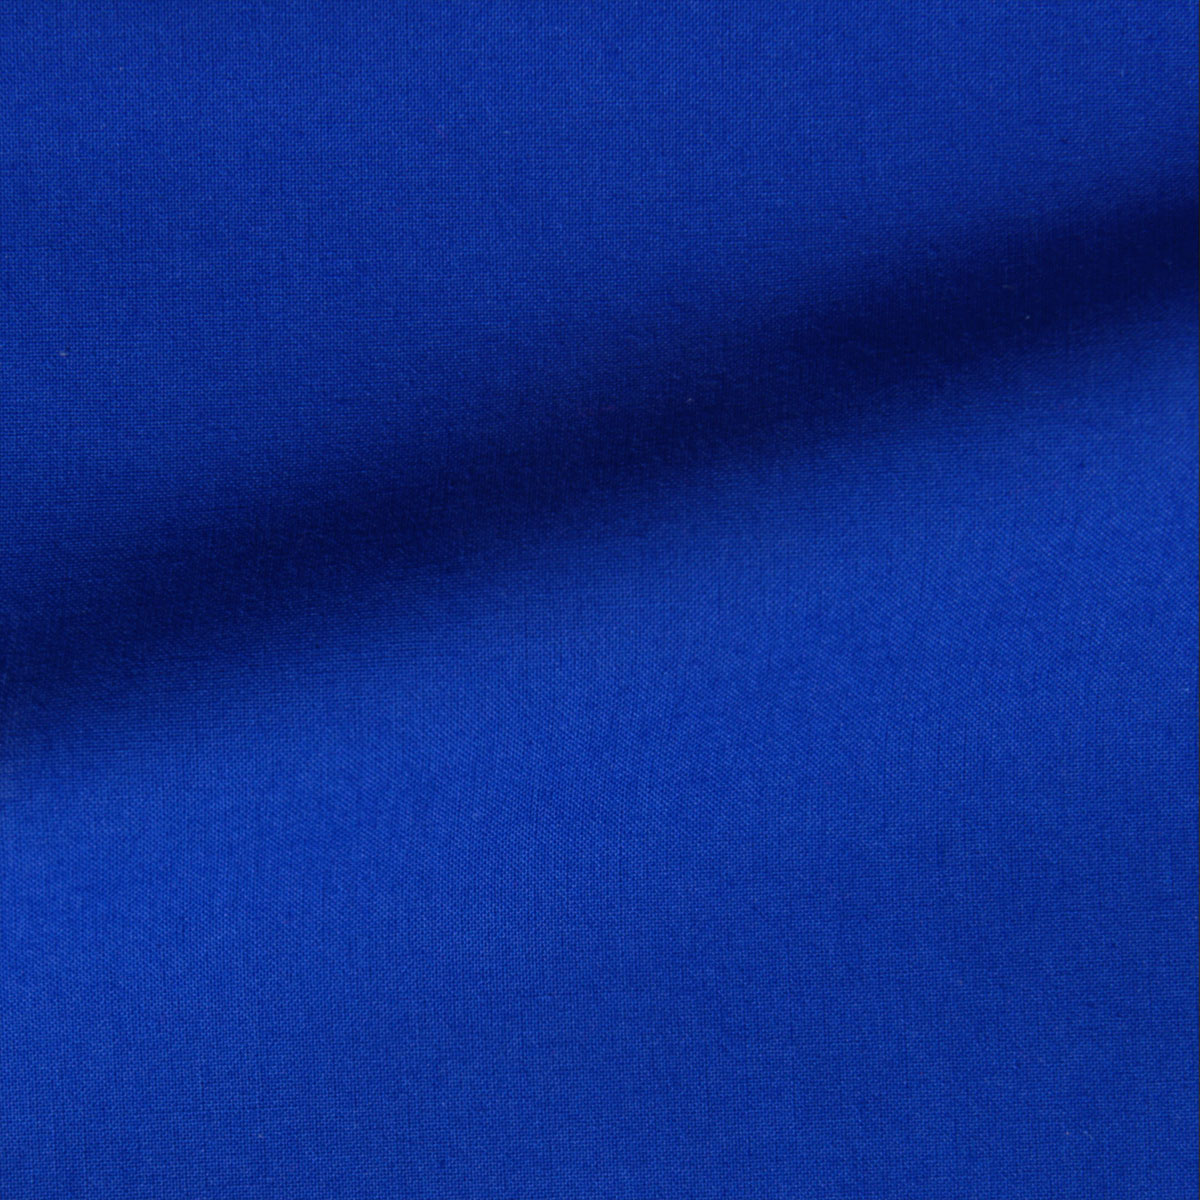 Dekostoff Freiberg royalblau in 1,4m Breite (METERWARE) Baumwollstoff Stoff aus 100% Baumwolle